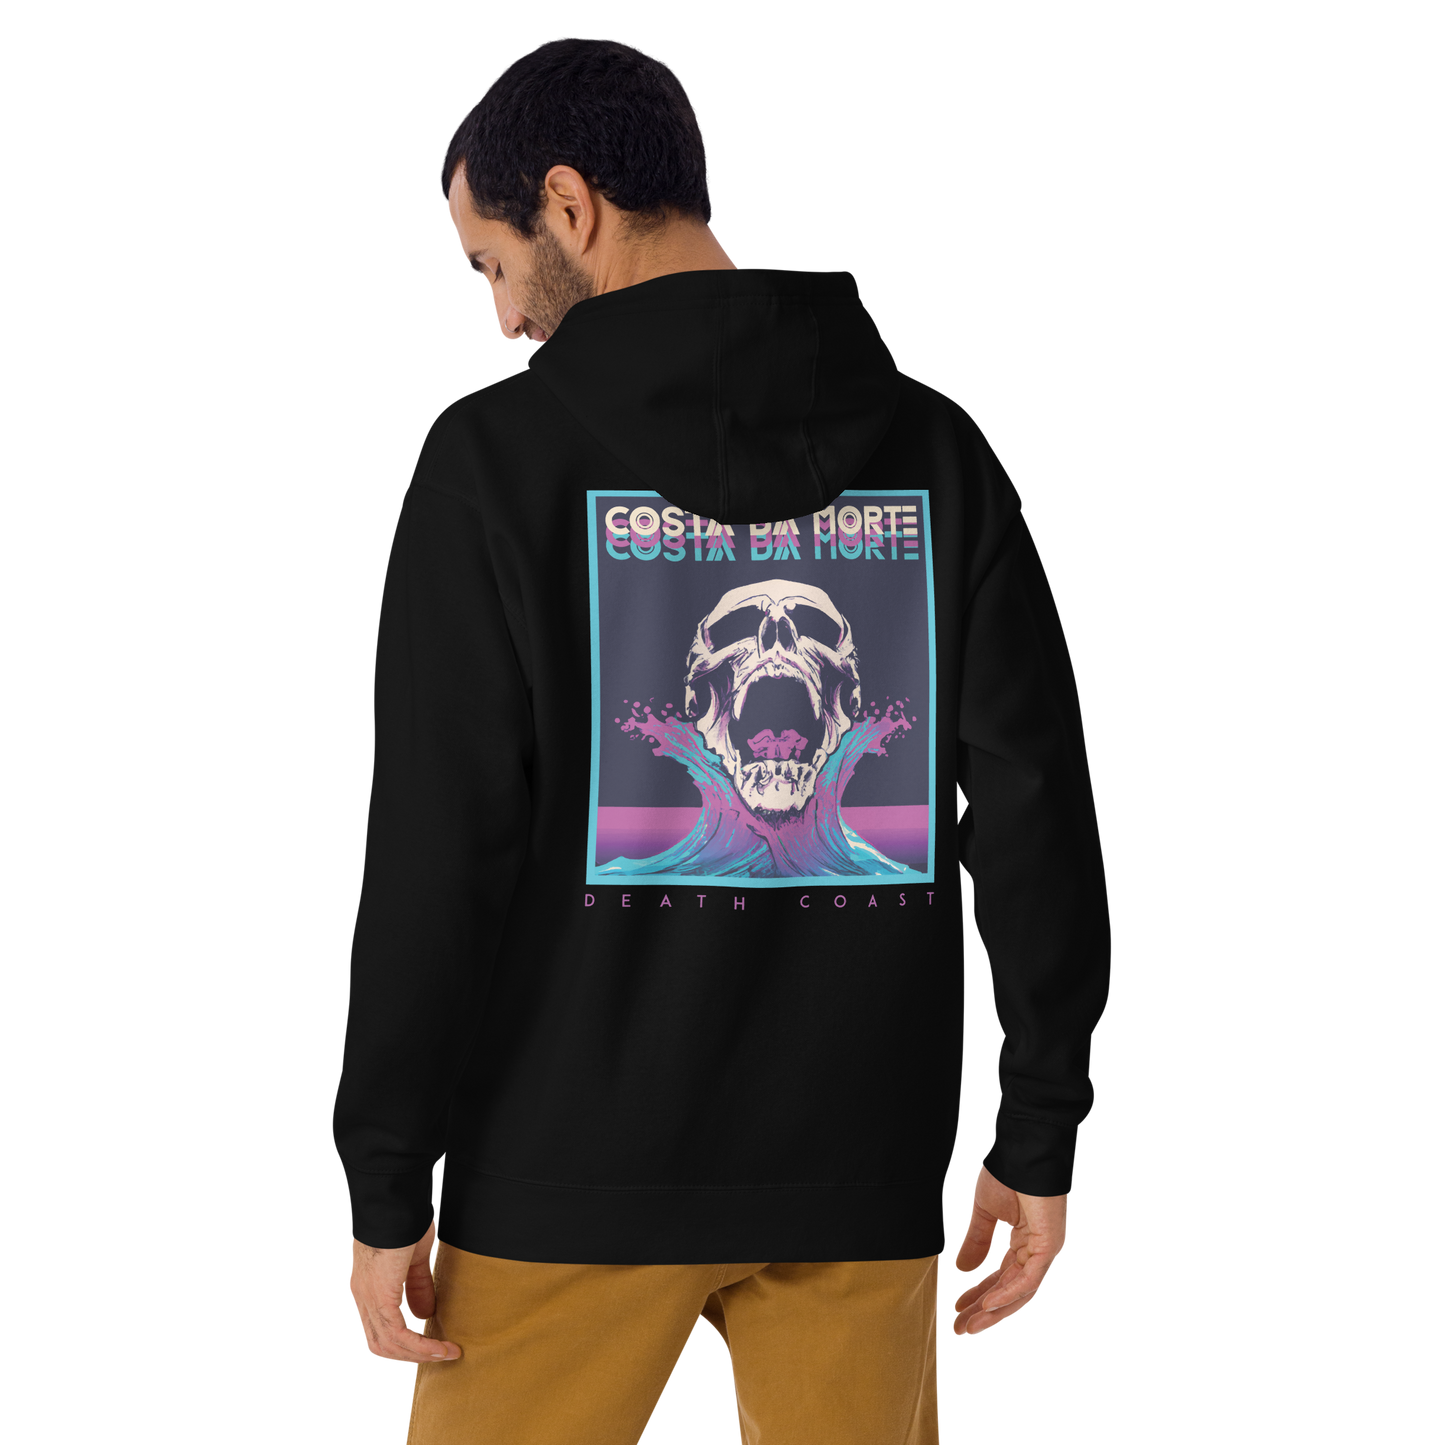 Sweatshirt # RIAL // Premium Hoodie with Hood and Pocket // Unisex